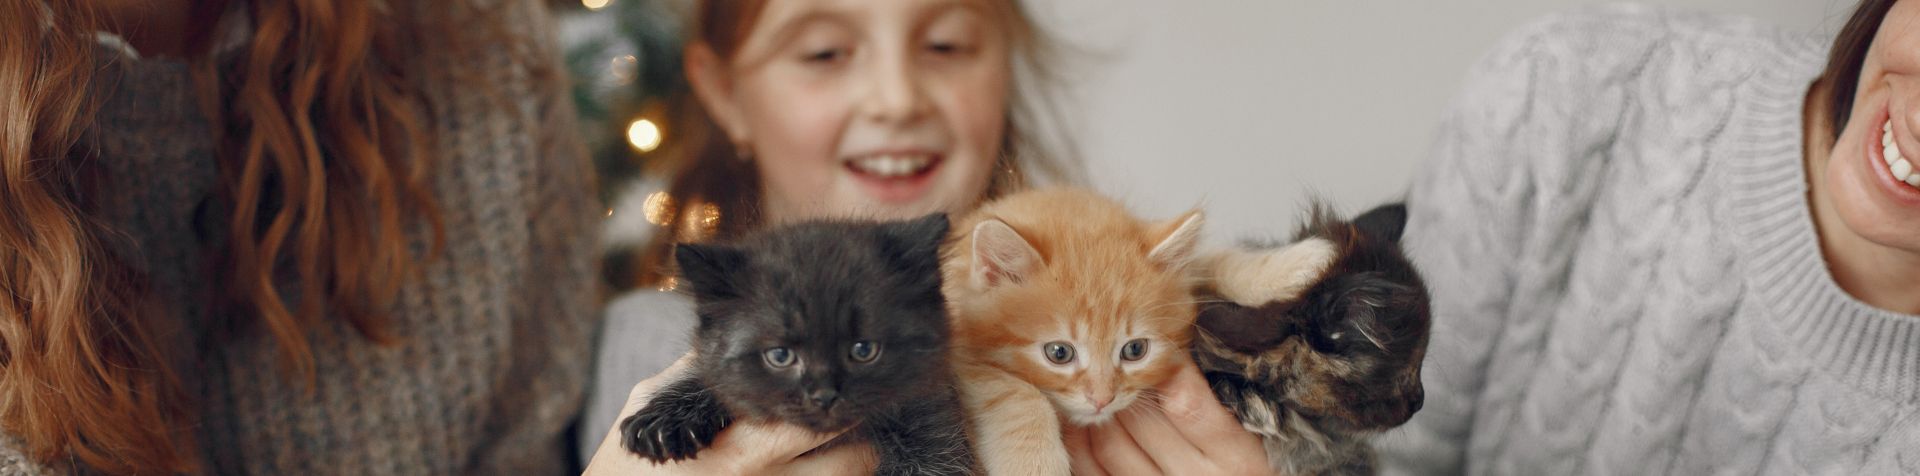 trois chatons dans les bras d'une petite fille